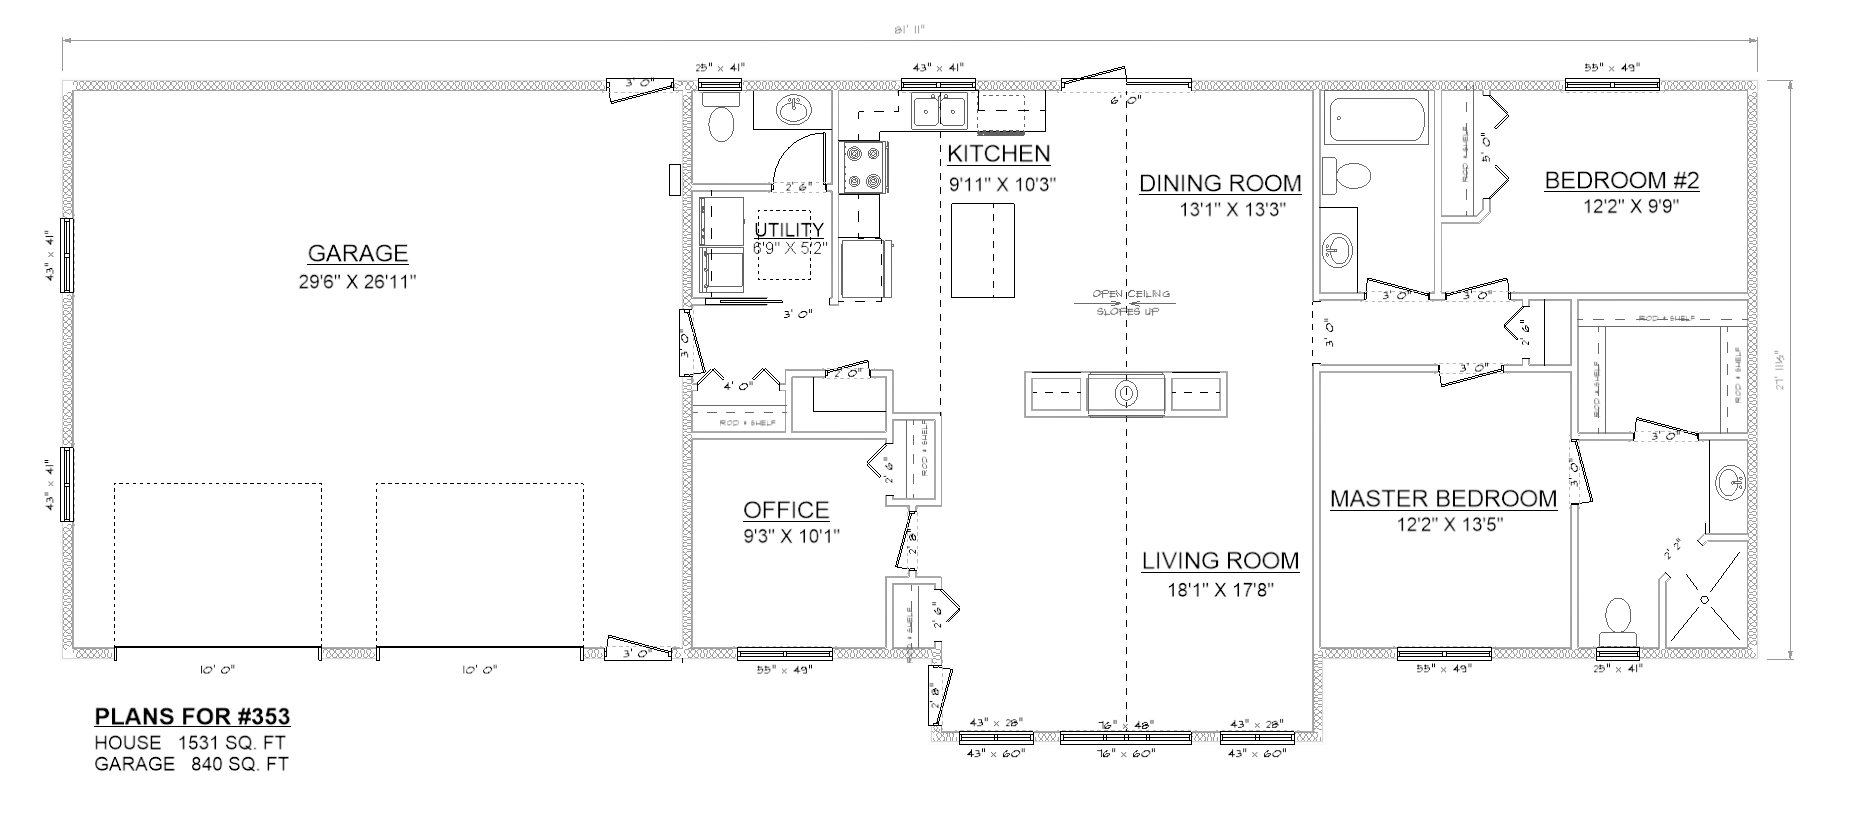 Penner Homes Floor Plan Id: 353